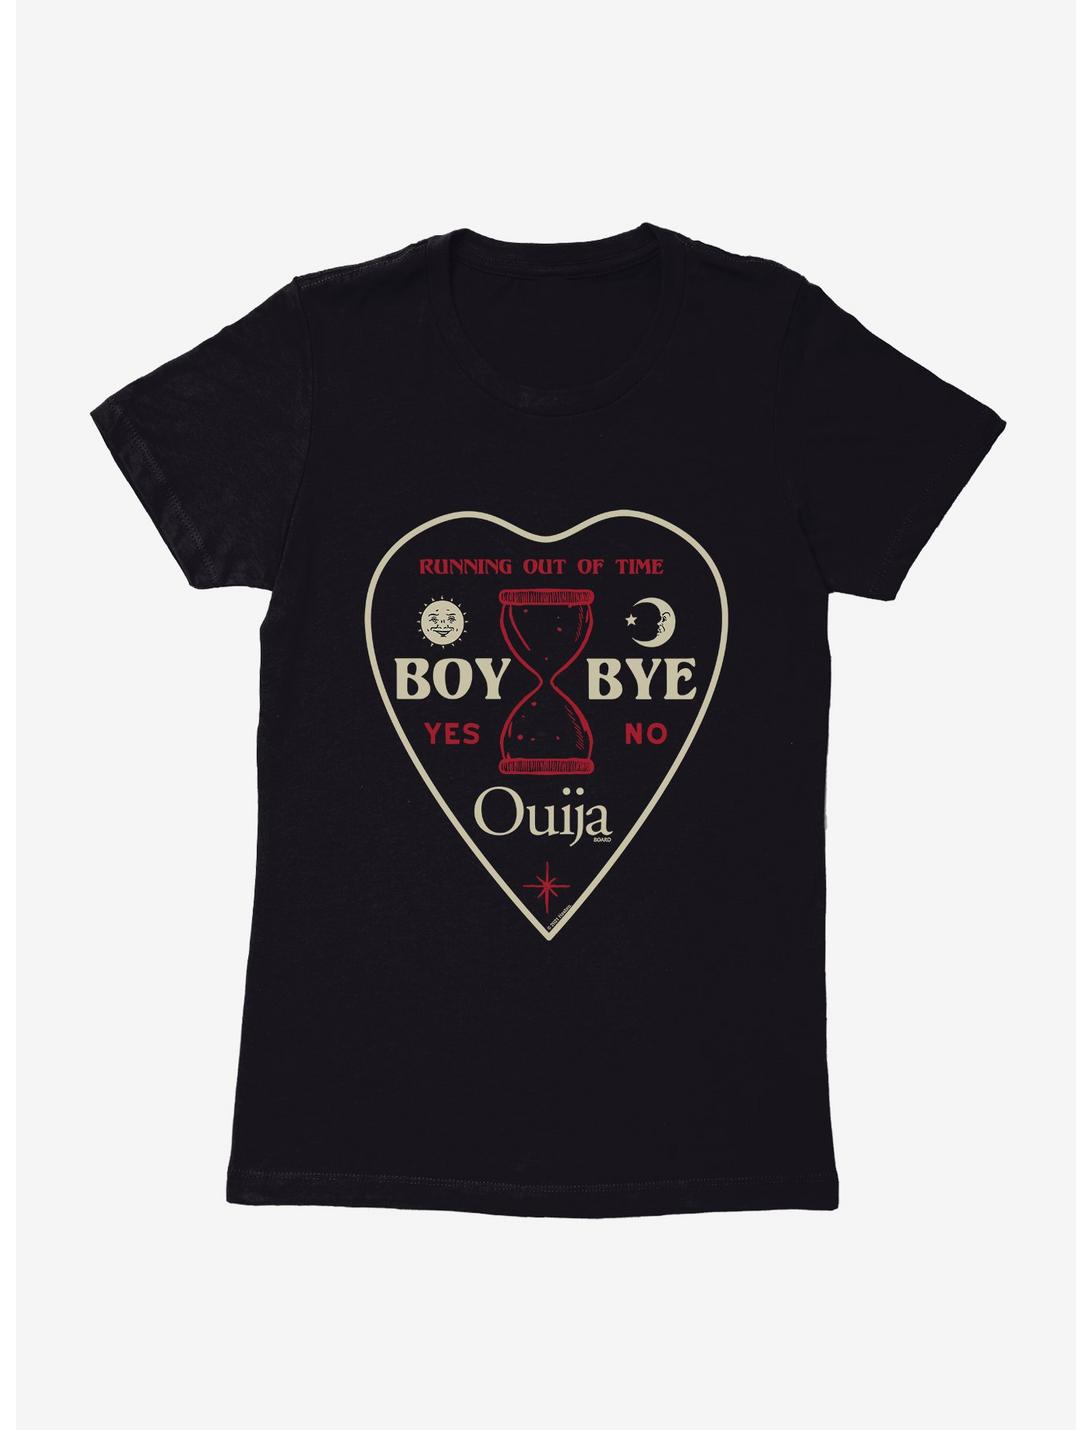 Ouija Game Boy Bye Womens T-Shirt, , hi-res